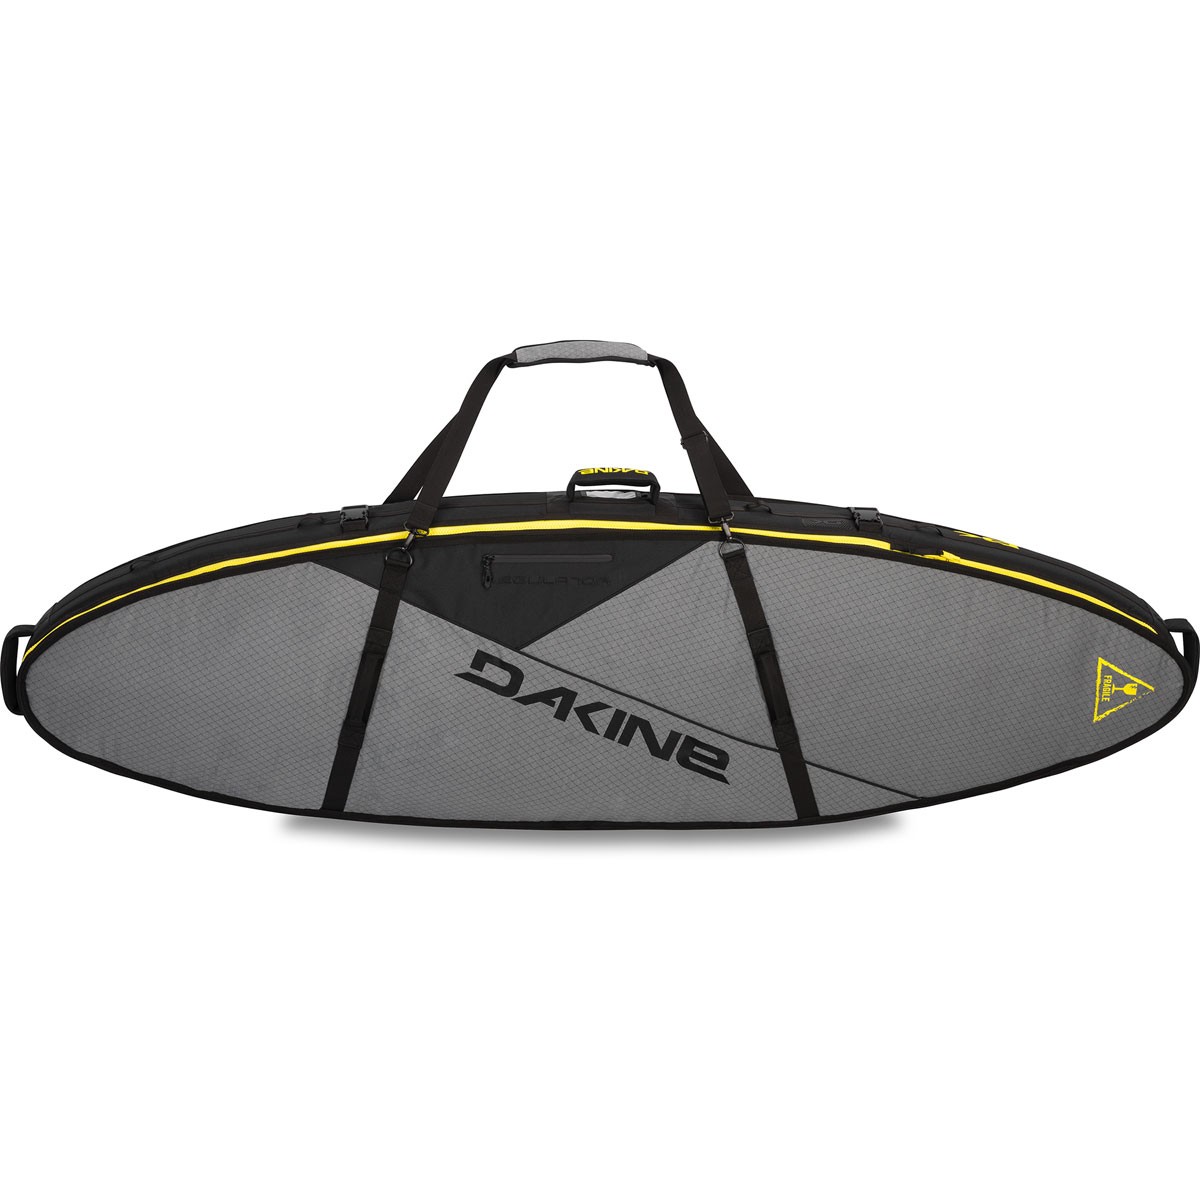 DAKINE ダカイン サーフボードケース REGULATOR ハイクオリティ SURFBOARD 6'6